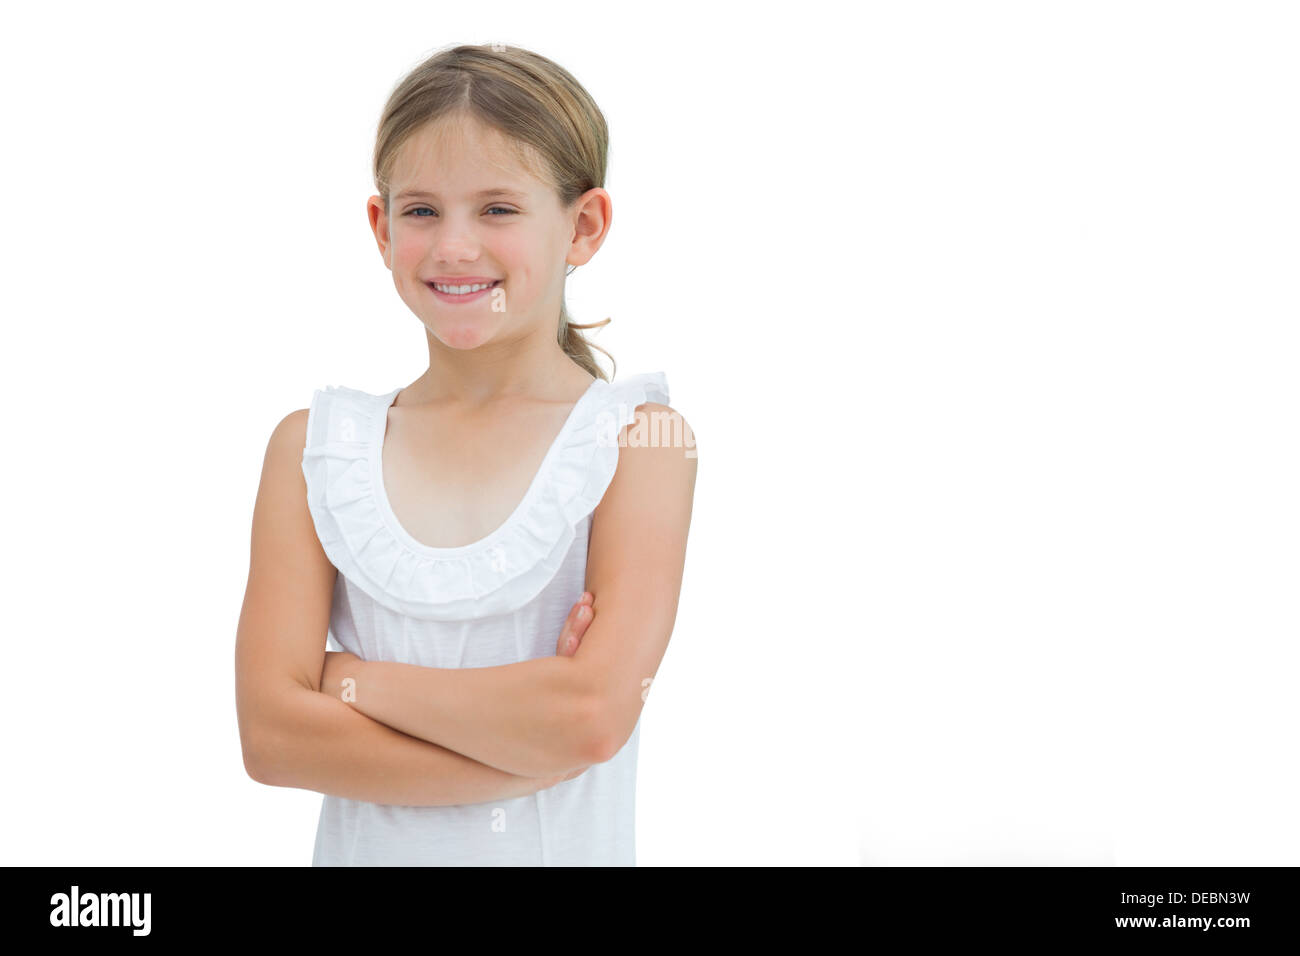 Cute young girl posing Stock Photo